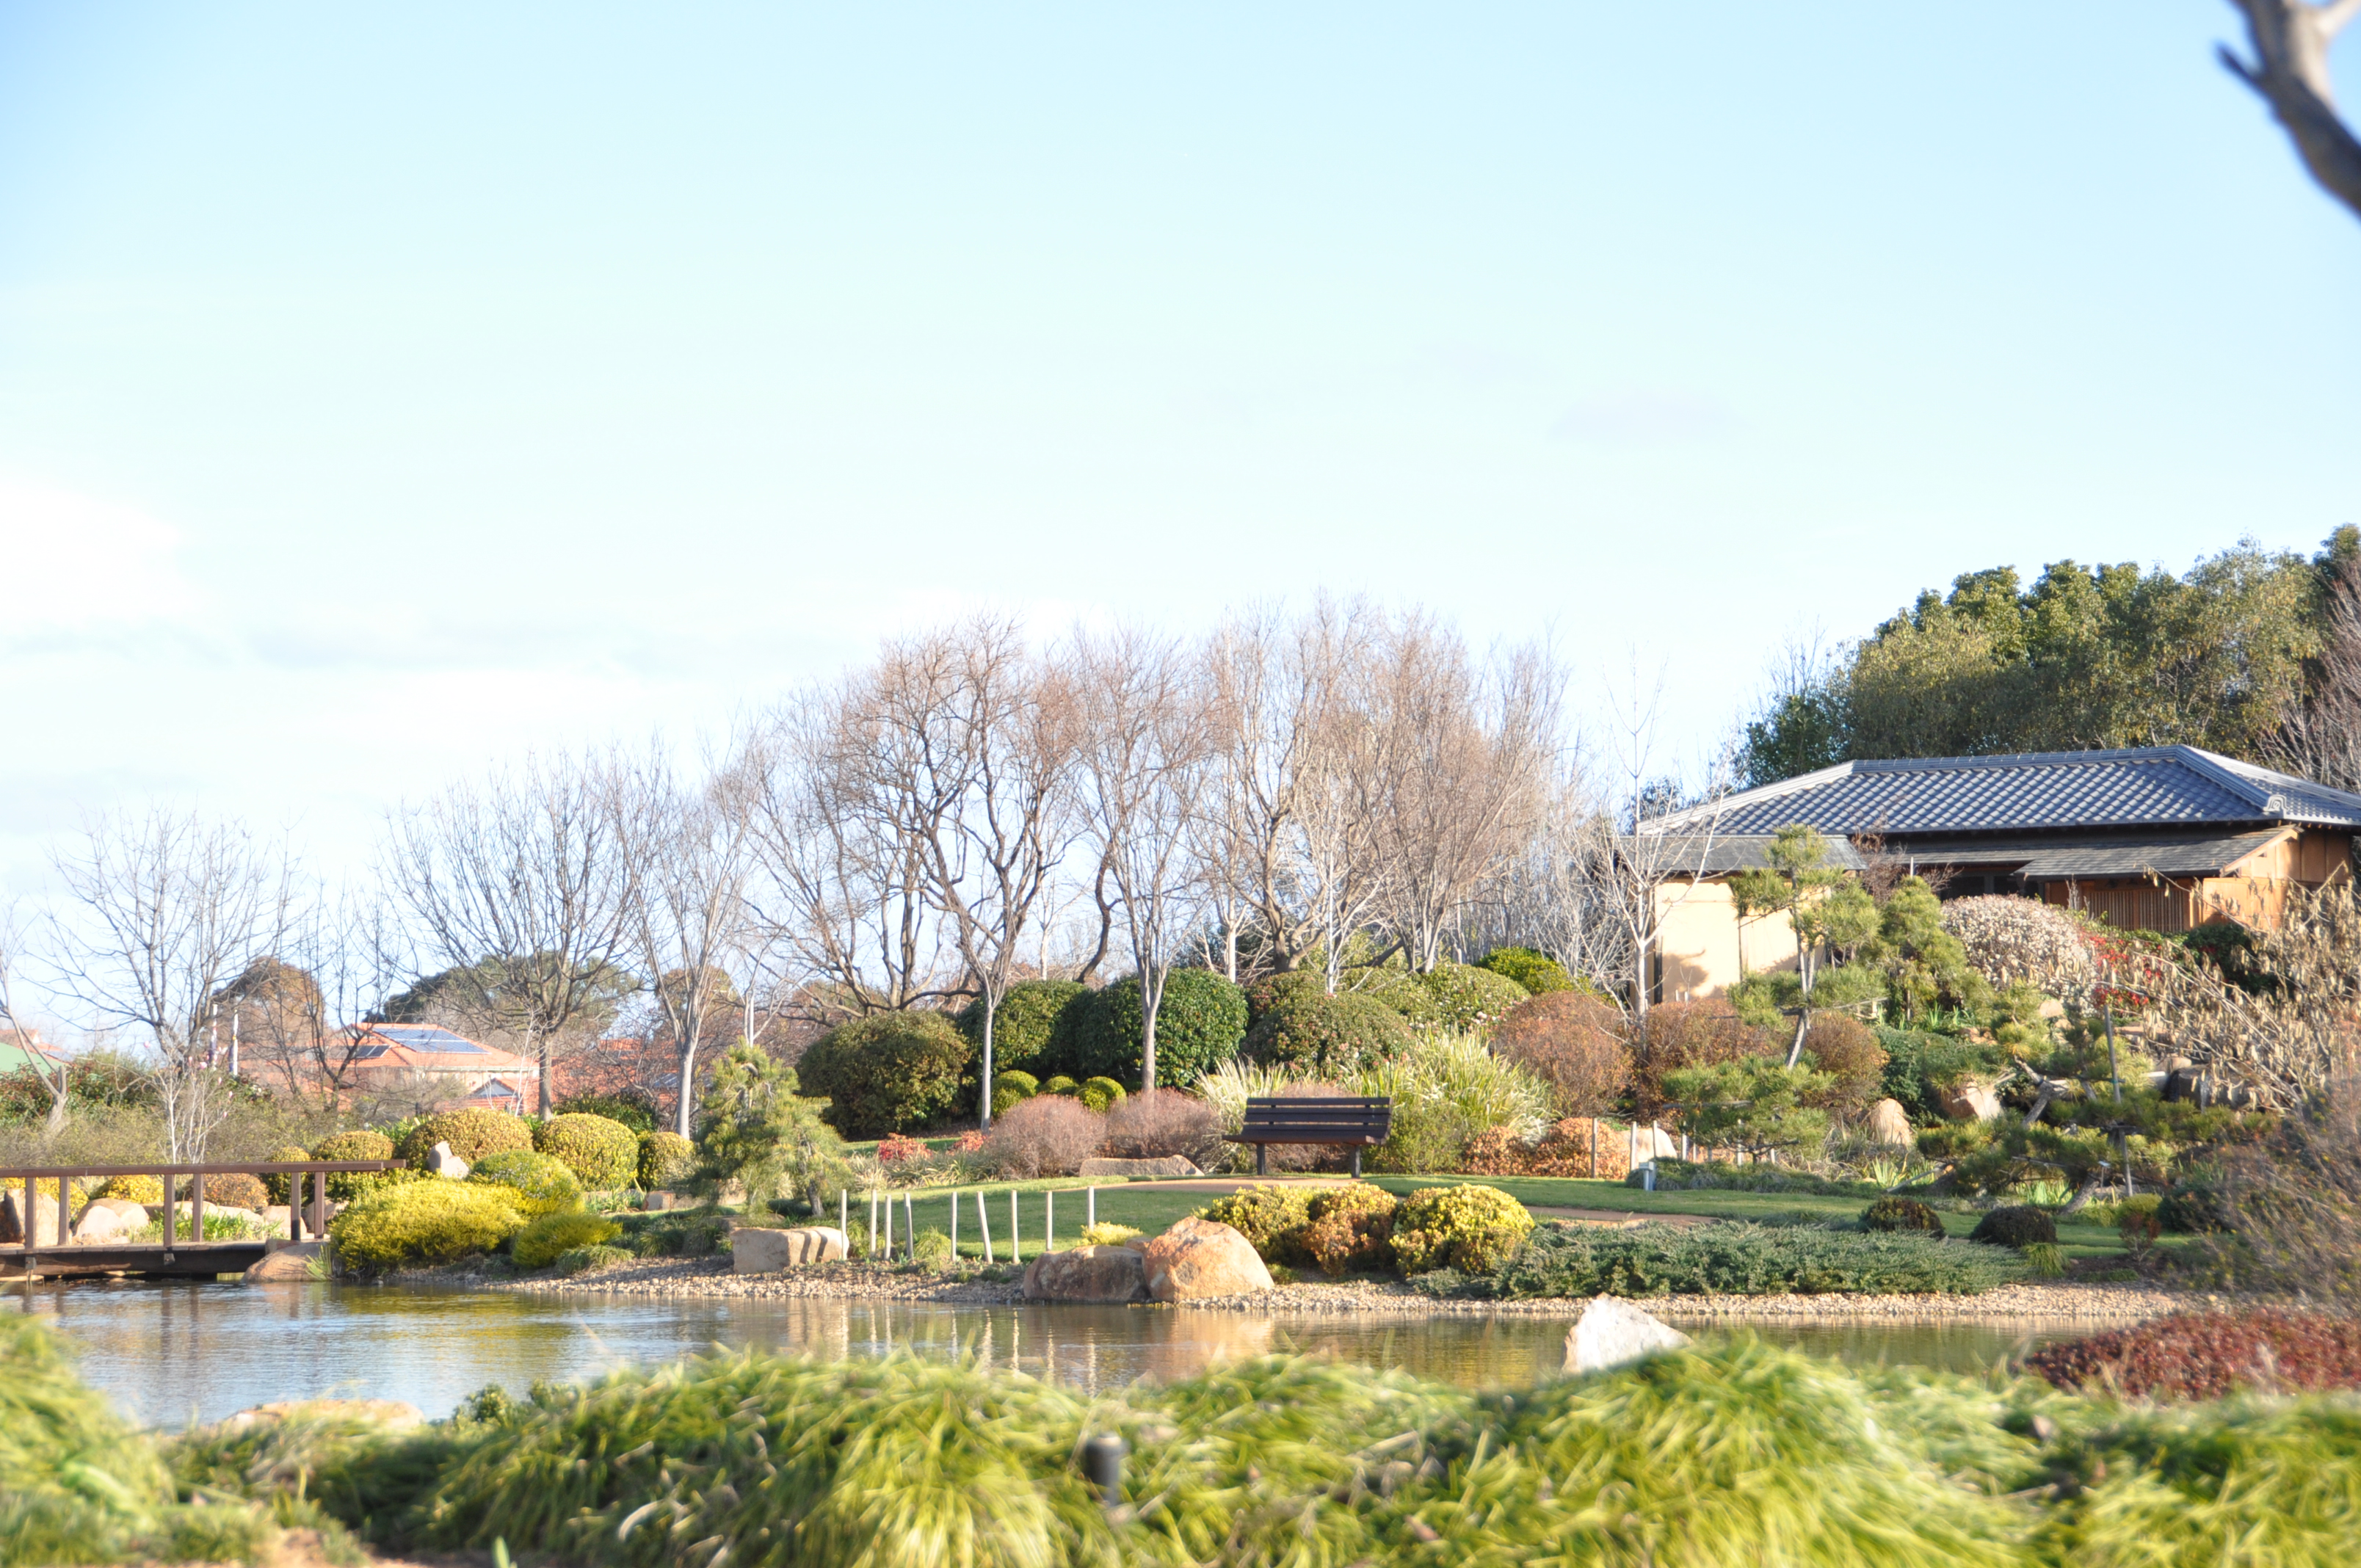 日本庭園逍遥園の風景の画像